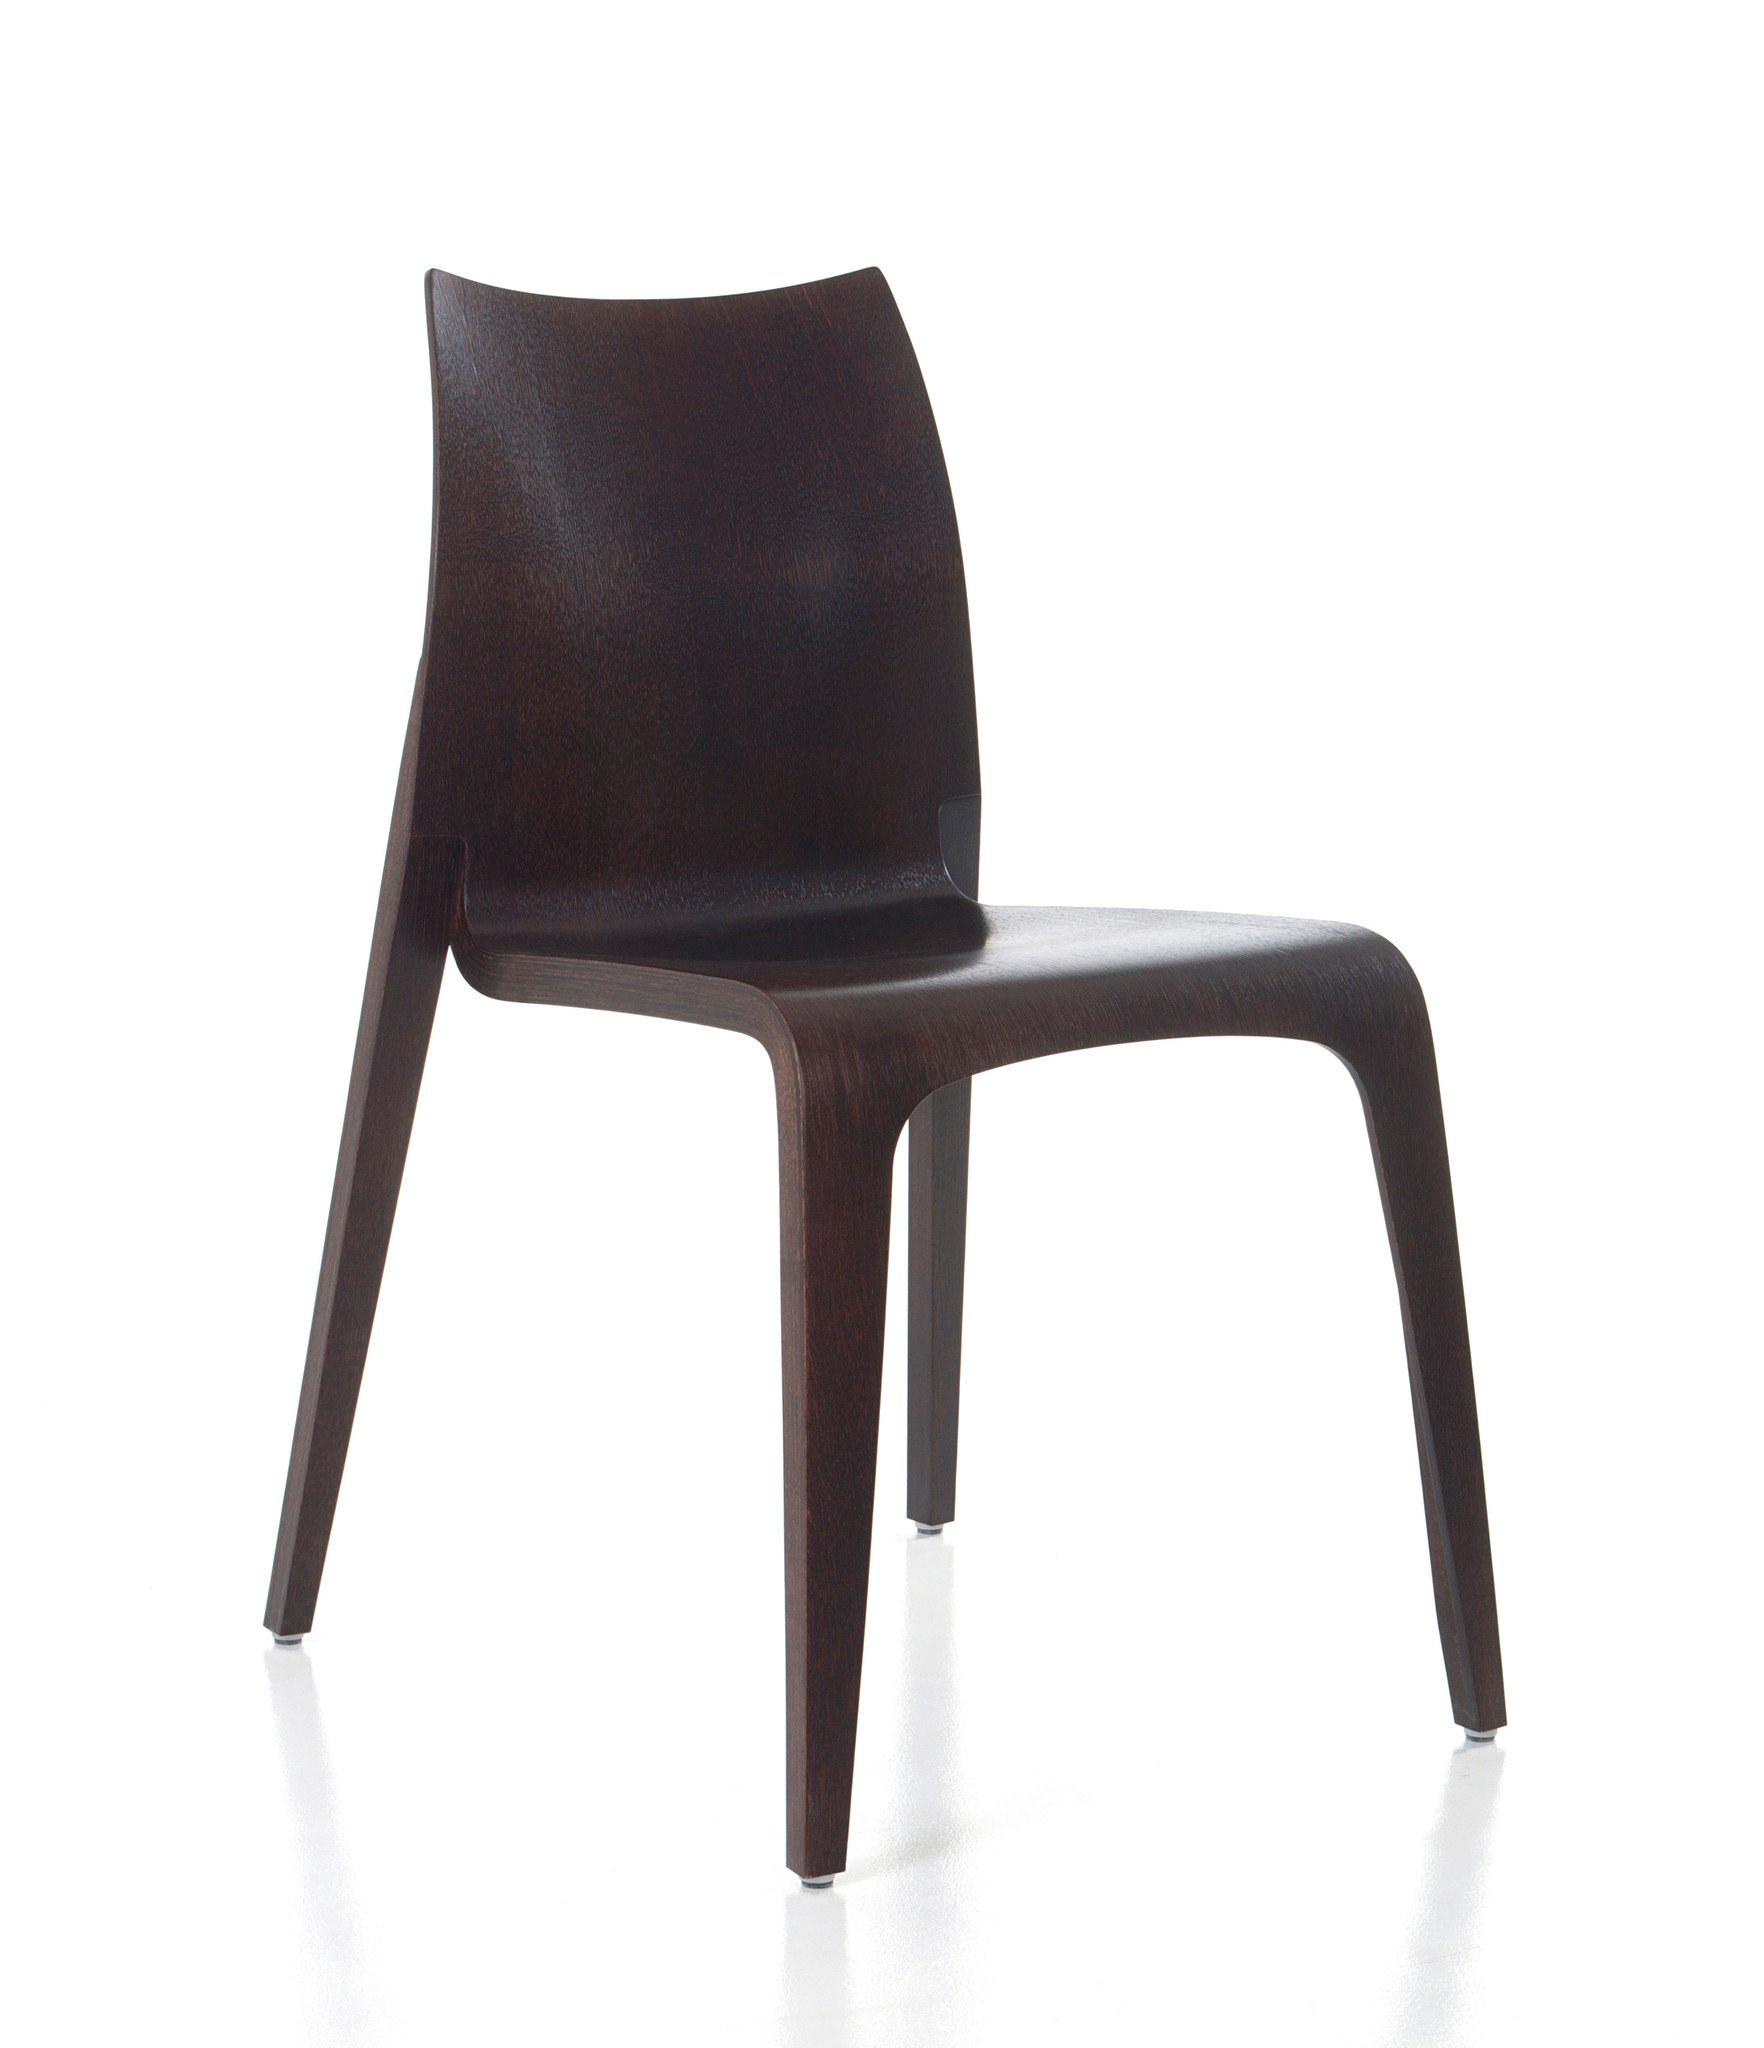 Vereniging Republiek Superioriteit Plycollection Flow houten stoel stapelbaar tot 10 stuks - Design Online  Meubels